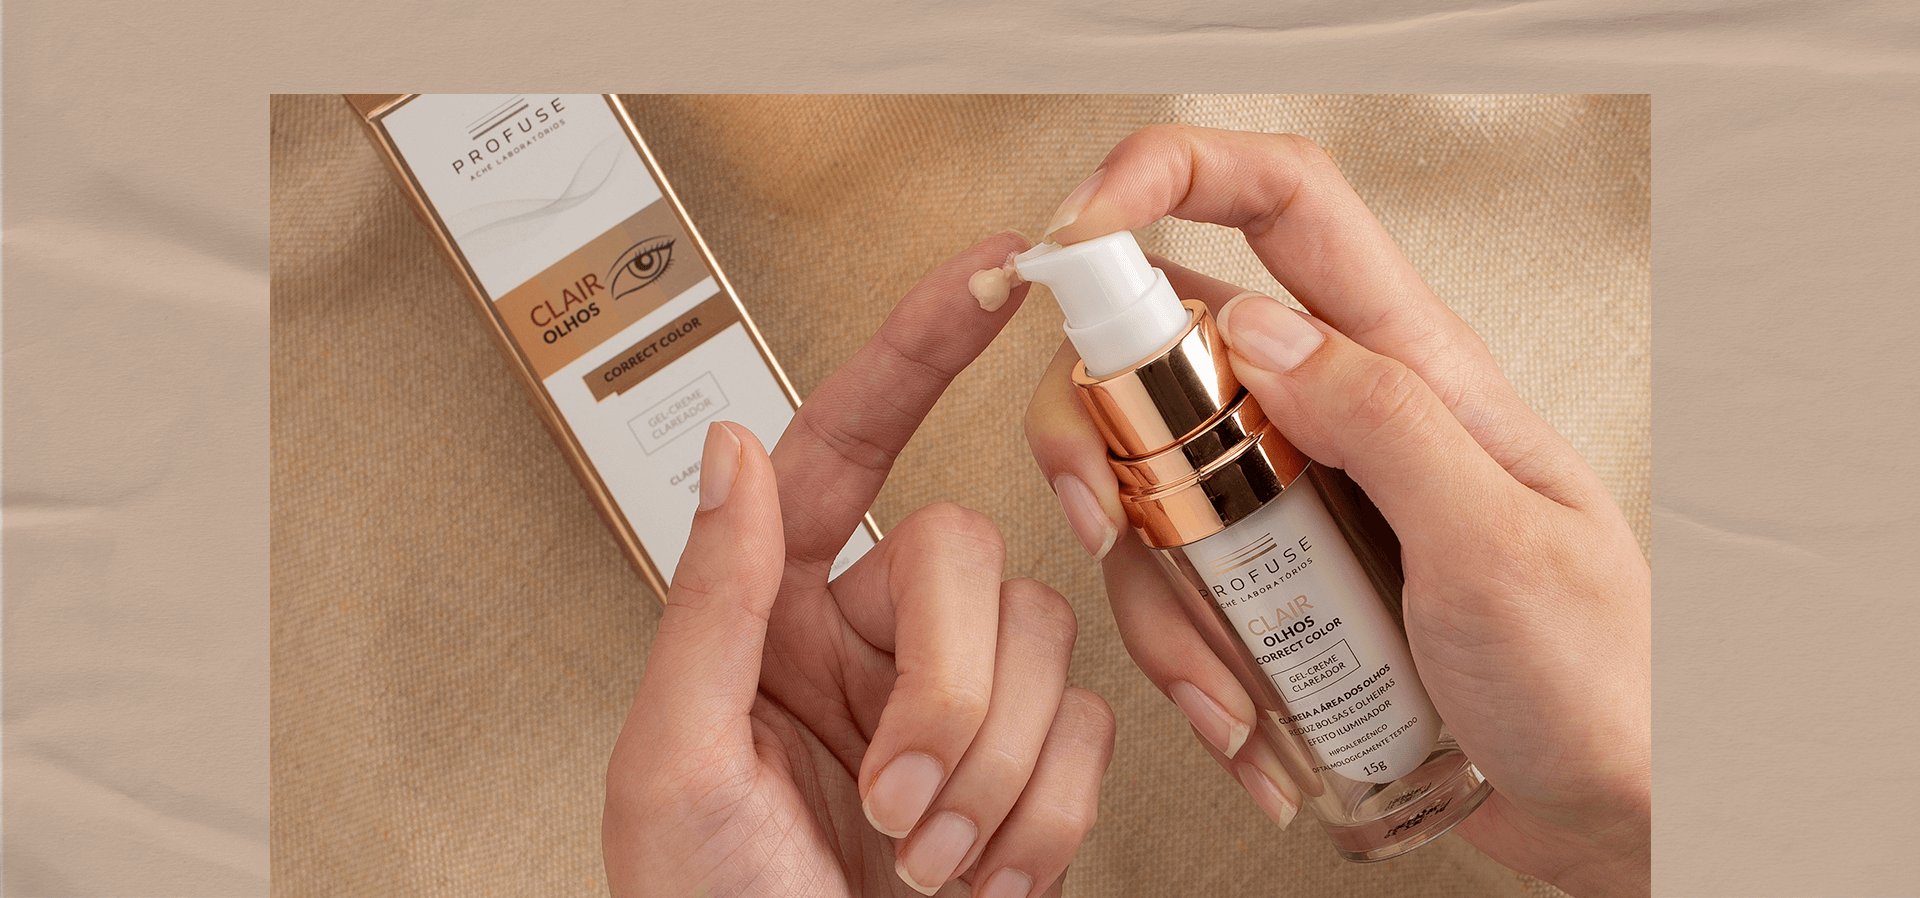  Imagem mostra uma pessoa aplicando Clair Olhos em seu dedo, com a embalagem do produto ao fundo 